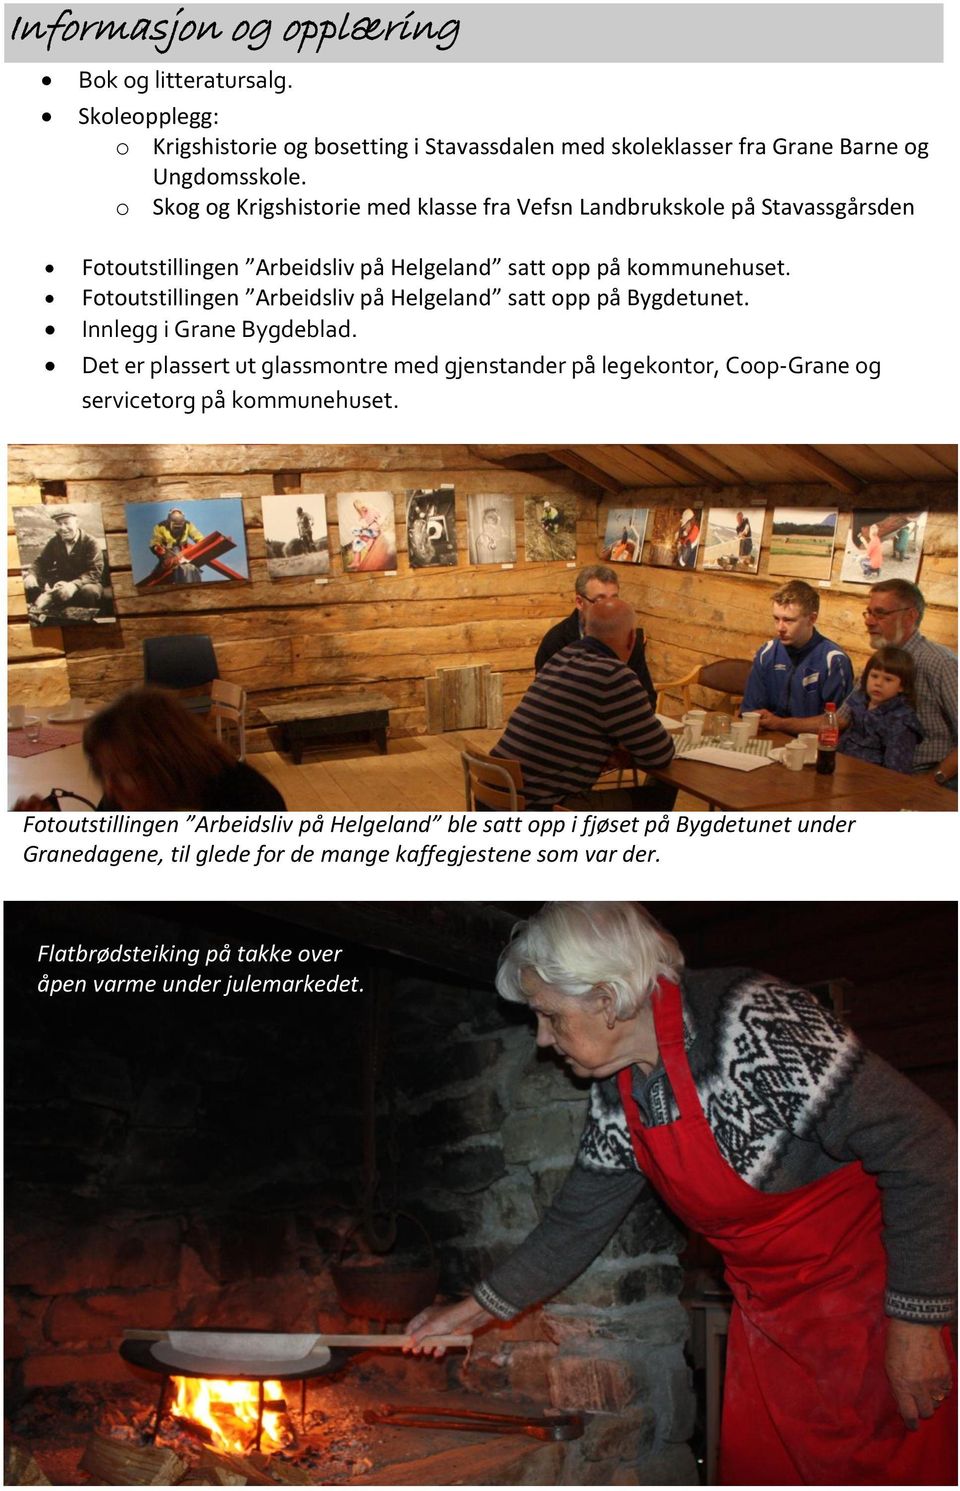 Fotoutstillingen Arbeidsliv på Helgeland satt opp på Bygdetunet. Innlegg i Grane Bygdeblad.